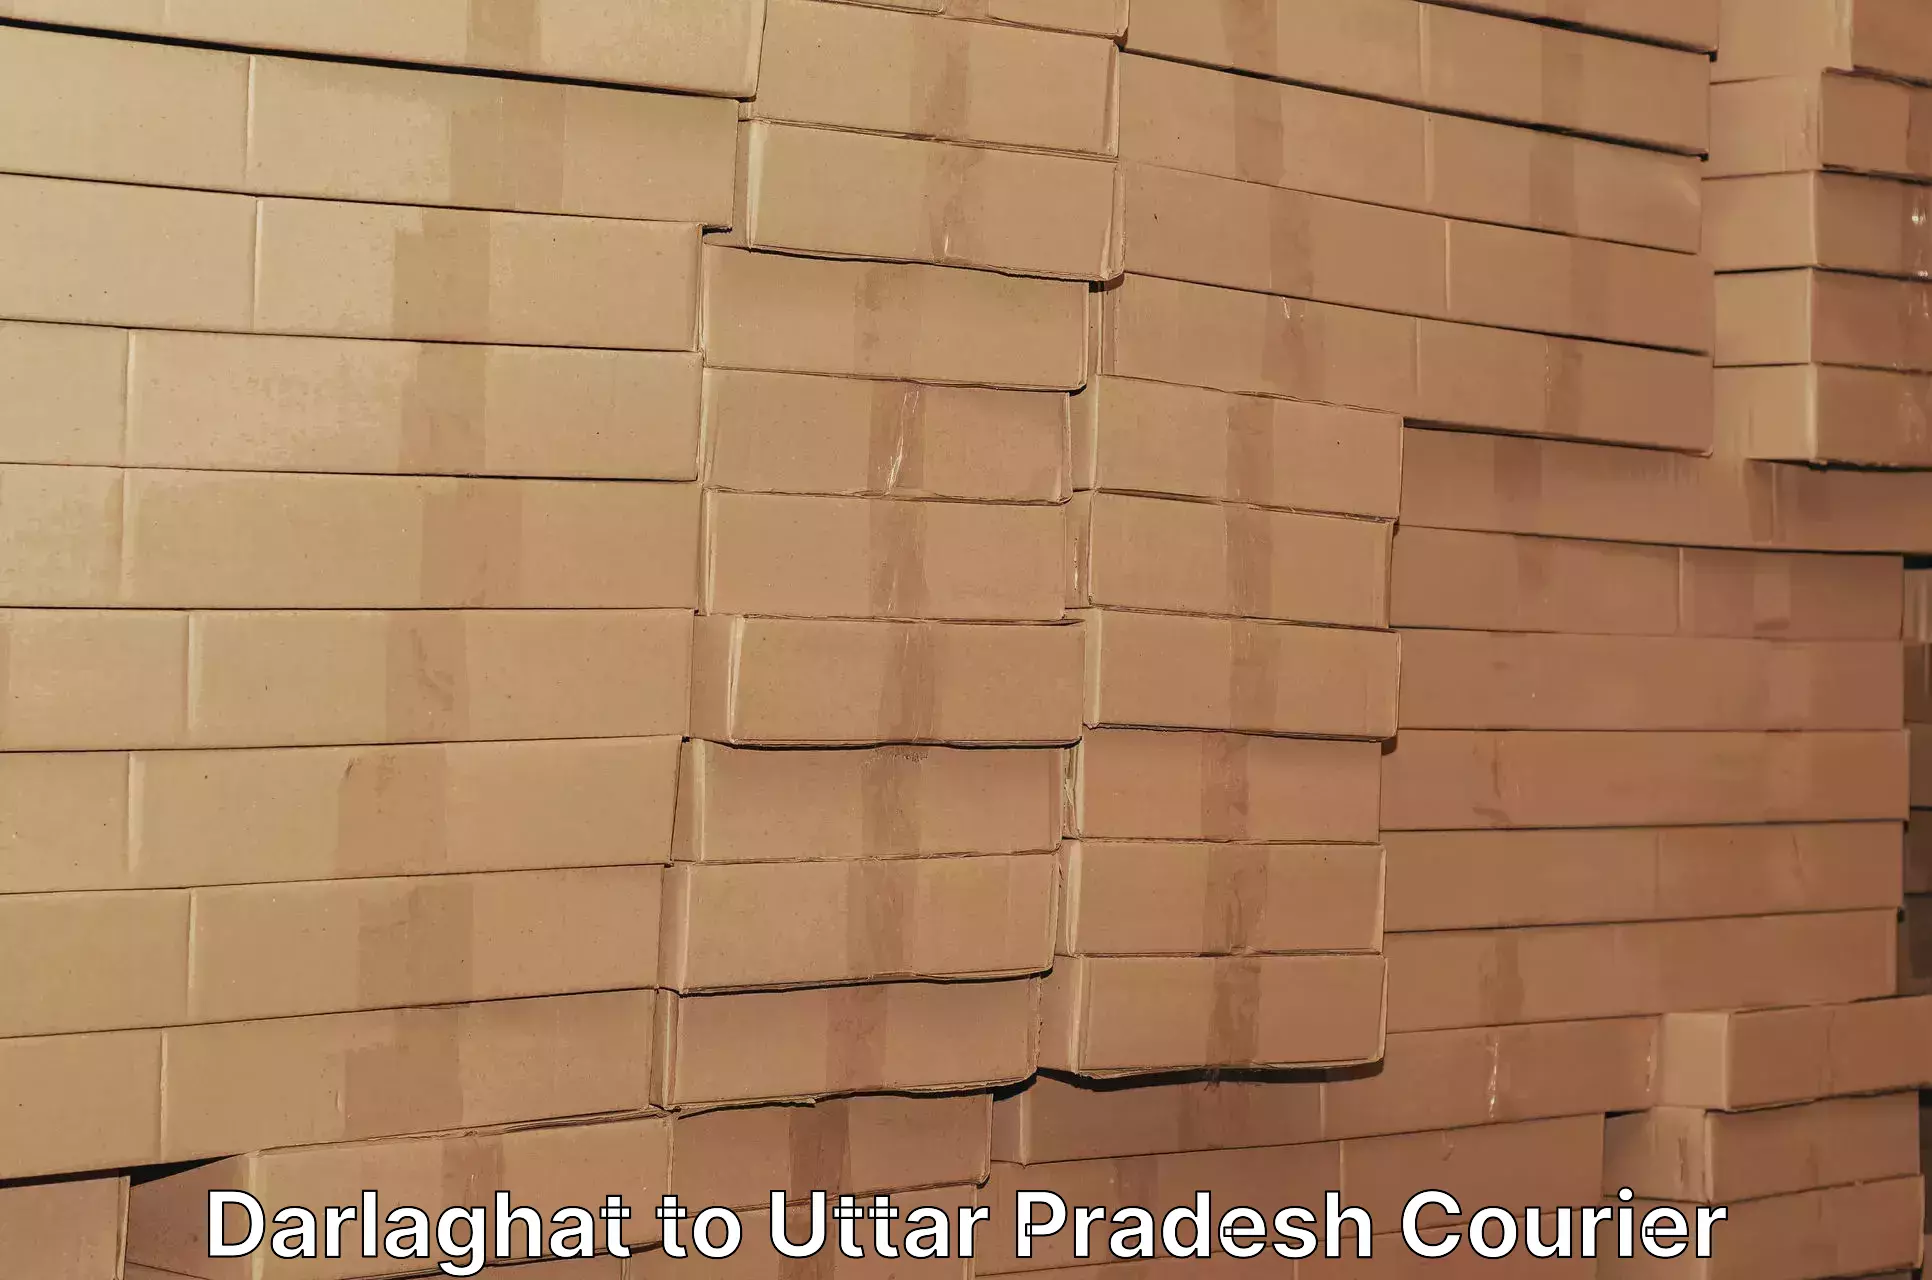 Cargo courier service Darlaghat to Siddharthnagar